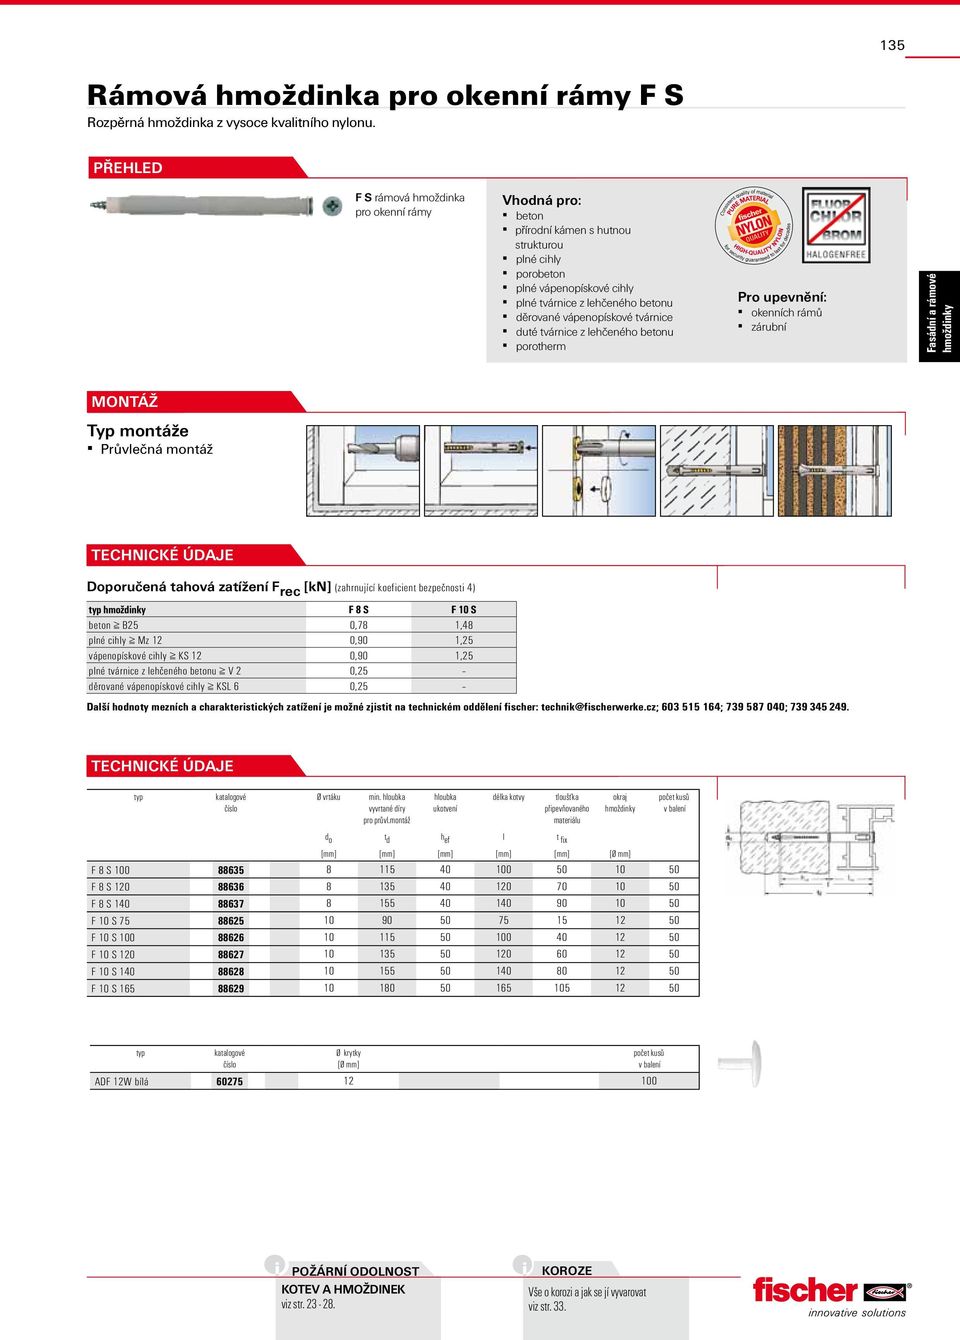 tvárnice duté tvárnice z lehčeného betonu porotherm Pro upevnění: okenních rámů zárubní Typ e Průvlečná Doporučená tahová zatížení F rec [kn] (zahrnující koeficient bezpečnosti 4) F 8 S F S beton B25